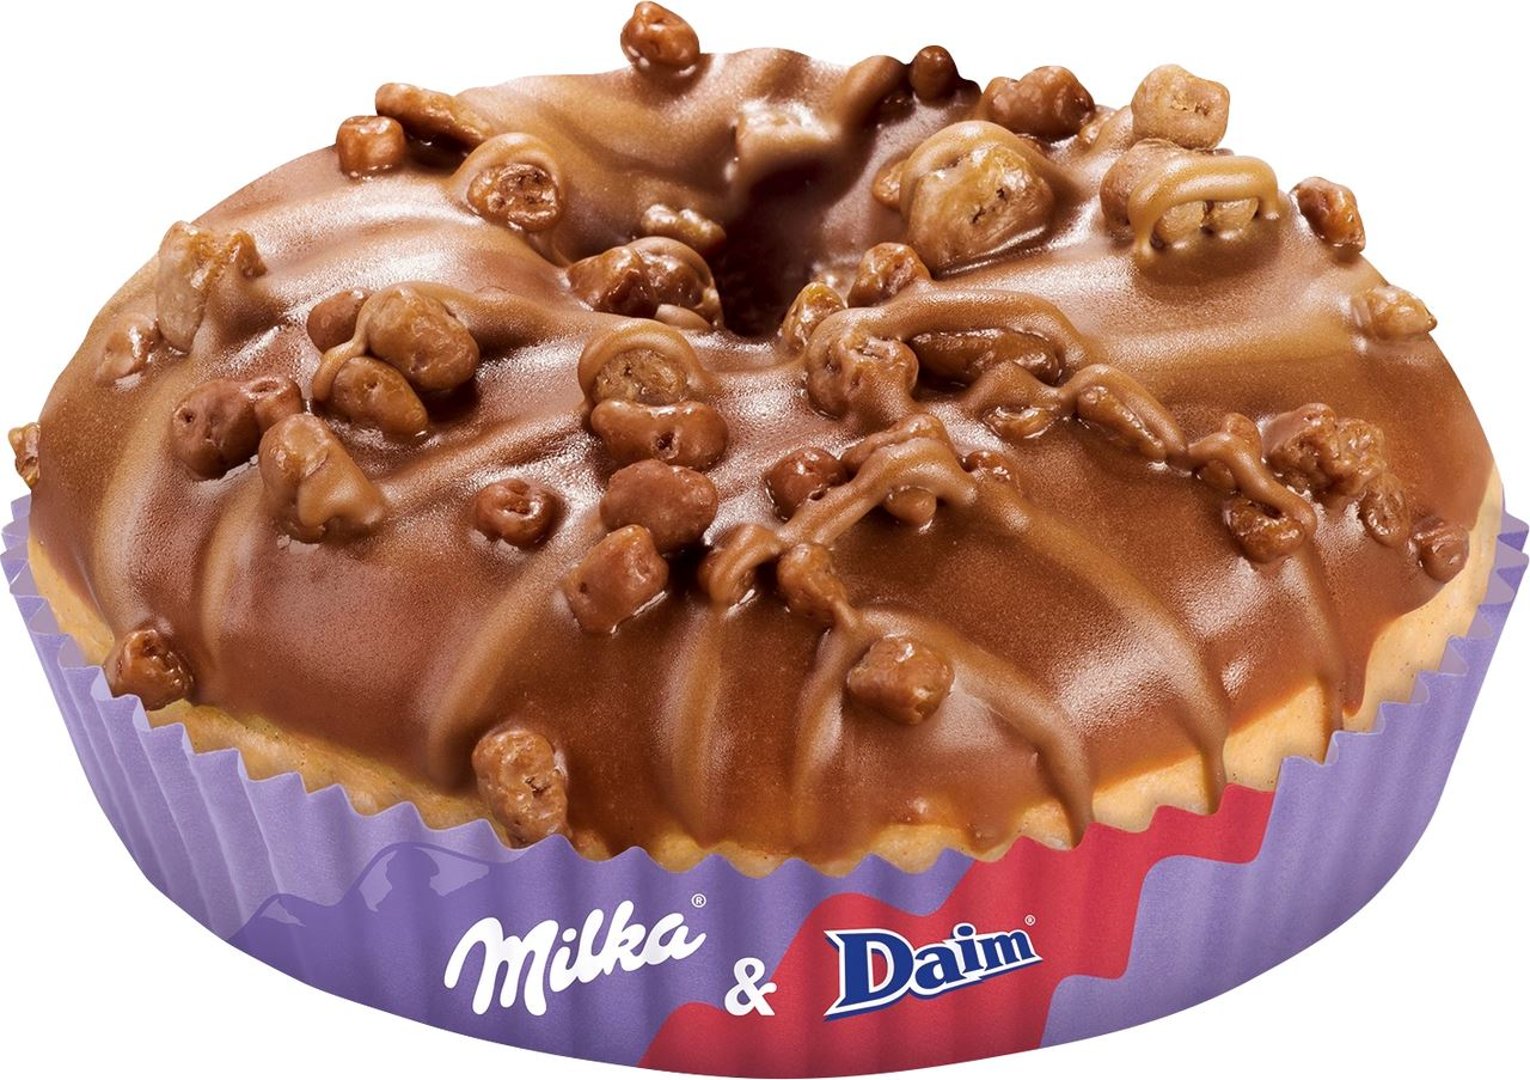 CSM - Donut mit Milka & Daim, tiefgefroren, fertig gebacken - 2 x 70 g Stücke